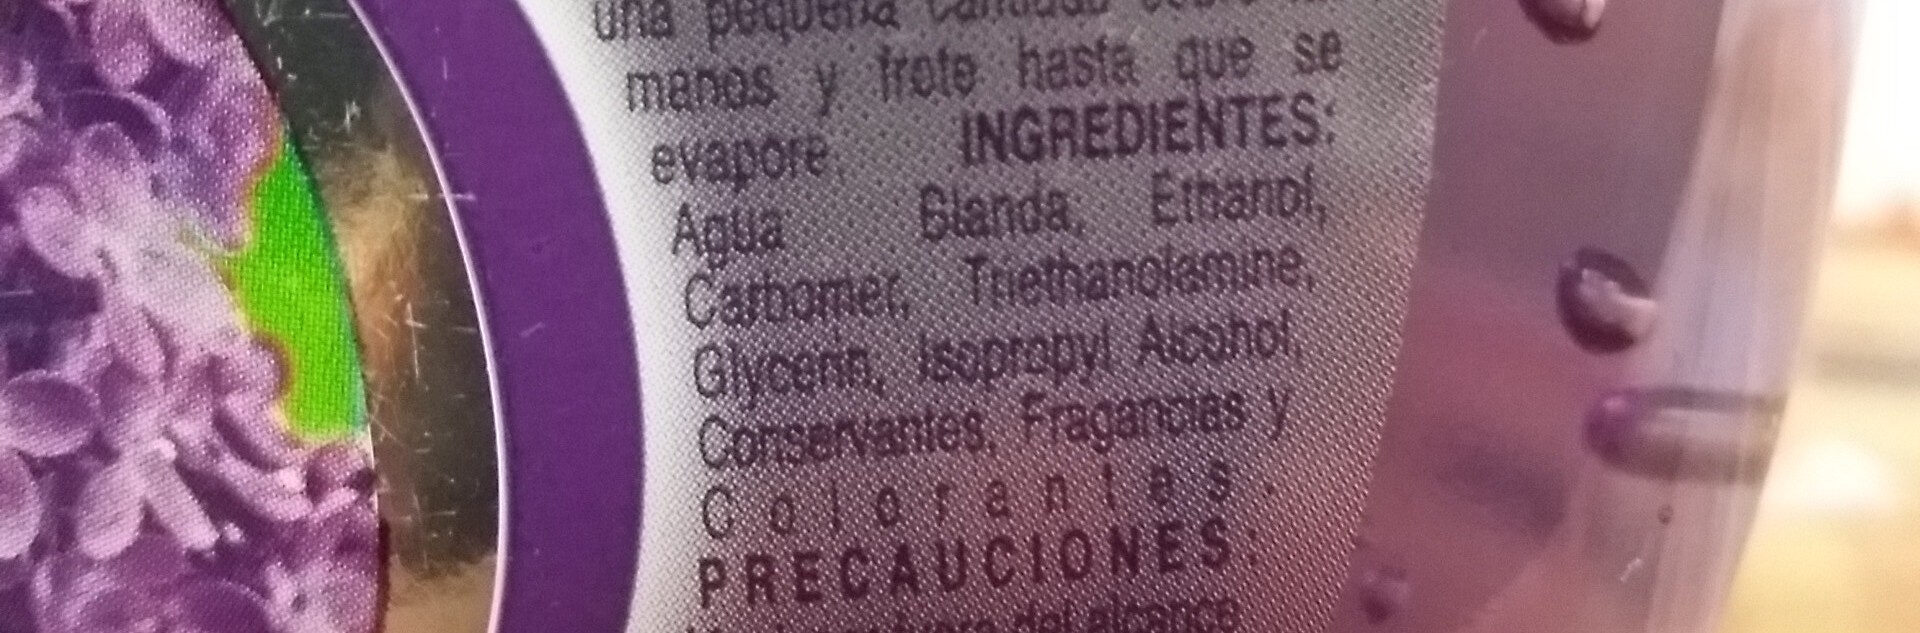 Alcohol en Gel - Ingredients - es